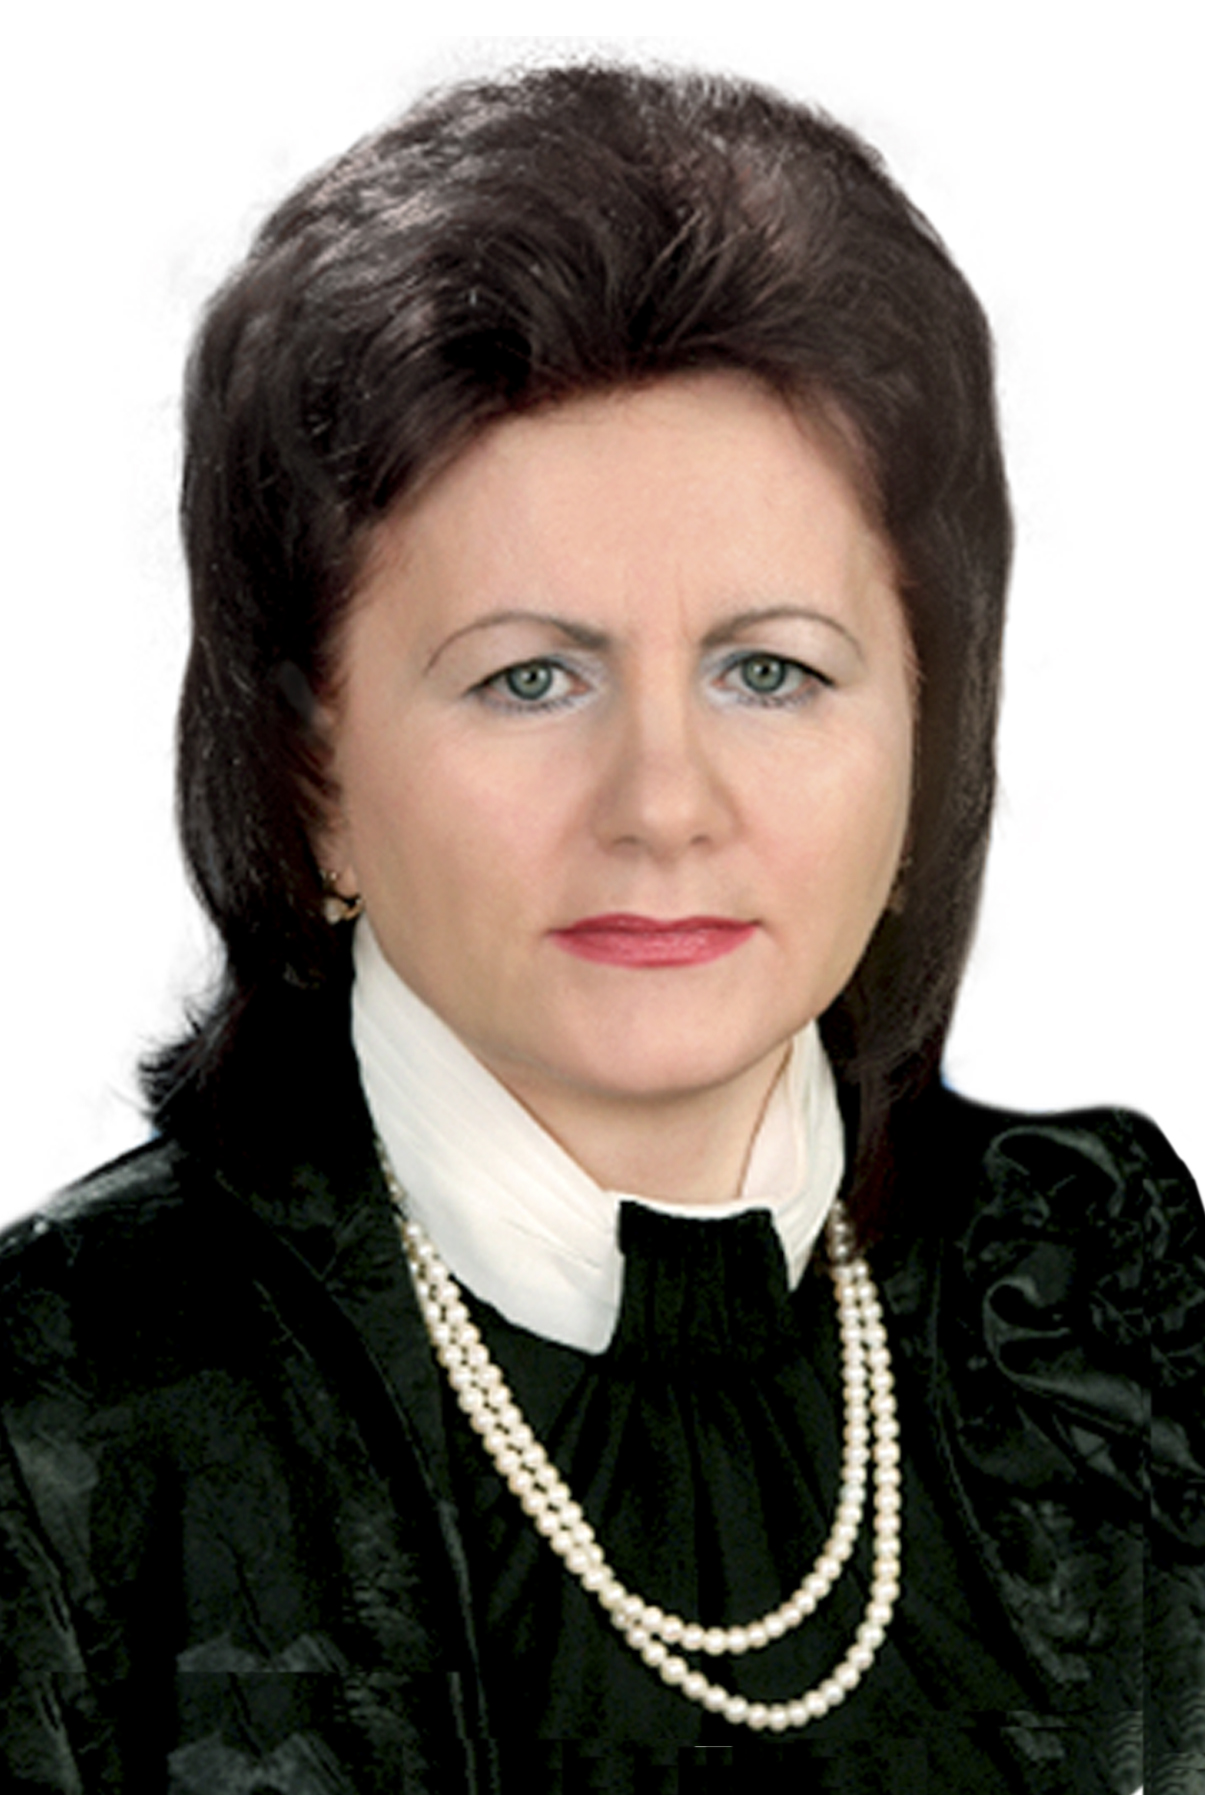 Ульянцева Валентина Васильевна.